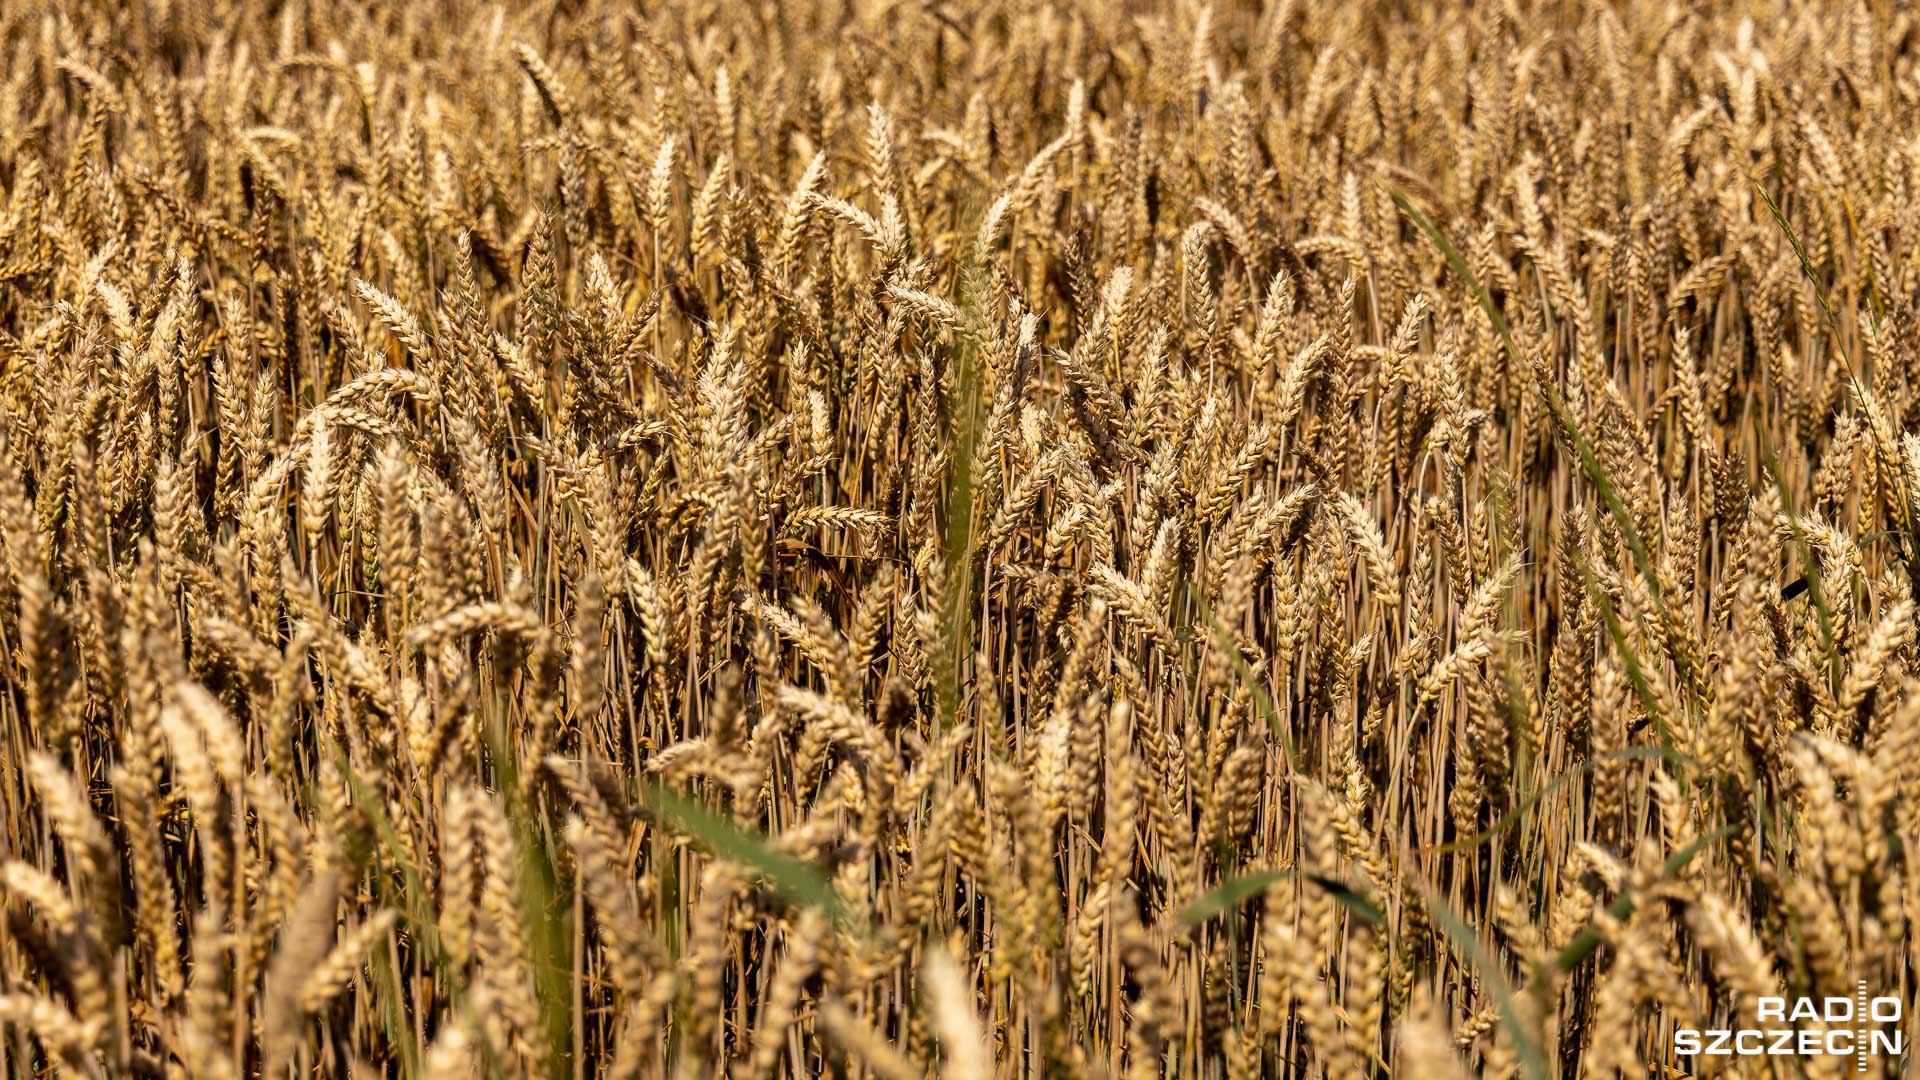 We wszystkich województwach występuje susza rolnicza - wynika z raportu puławskiego Instytutu Uprawy Nawożenia i Gleboznawstwa. Do końca maja wyschło co najmniej 20 procent upraw. Największe straty odnotowano na Mazowszu i Lubelszczyźnie.